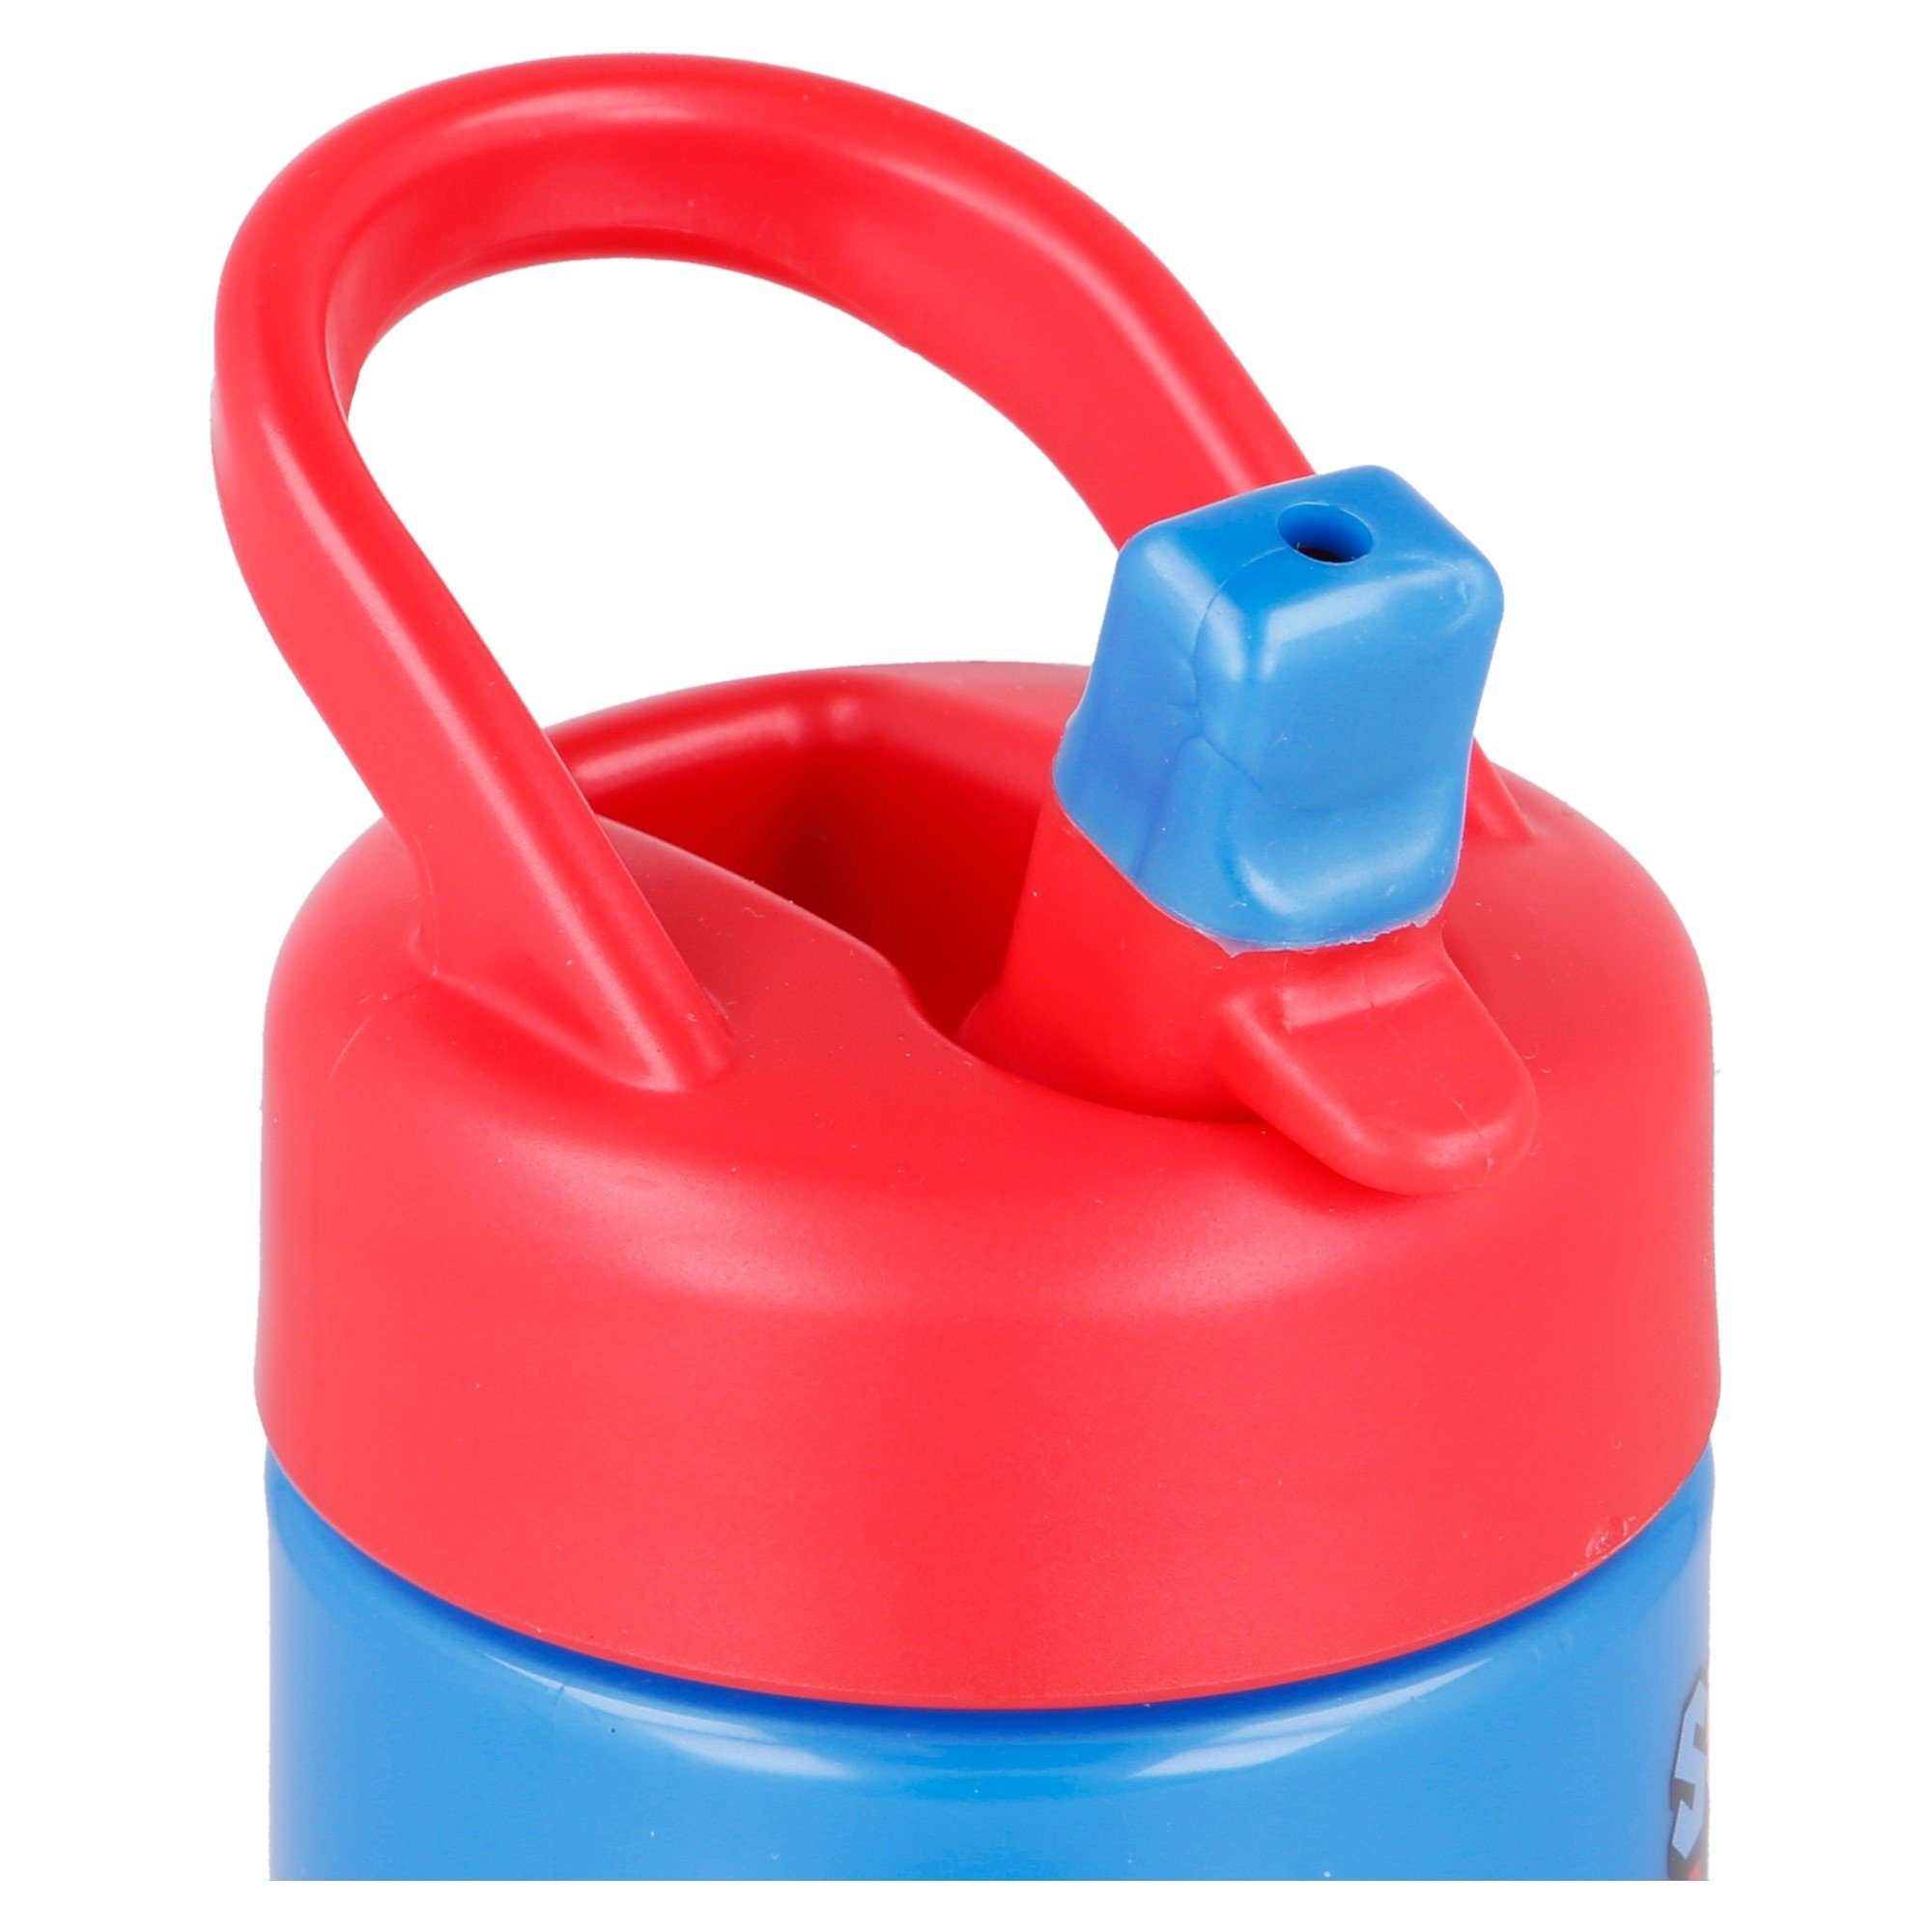 Wasserflasche, Mario Super 410 ml Kinder Mario Yoshi Trinkflasche Super Toady Luigi Flasche